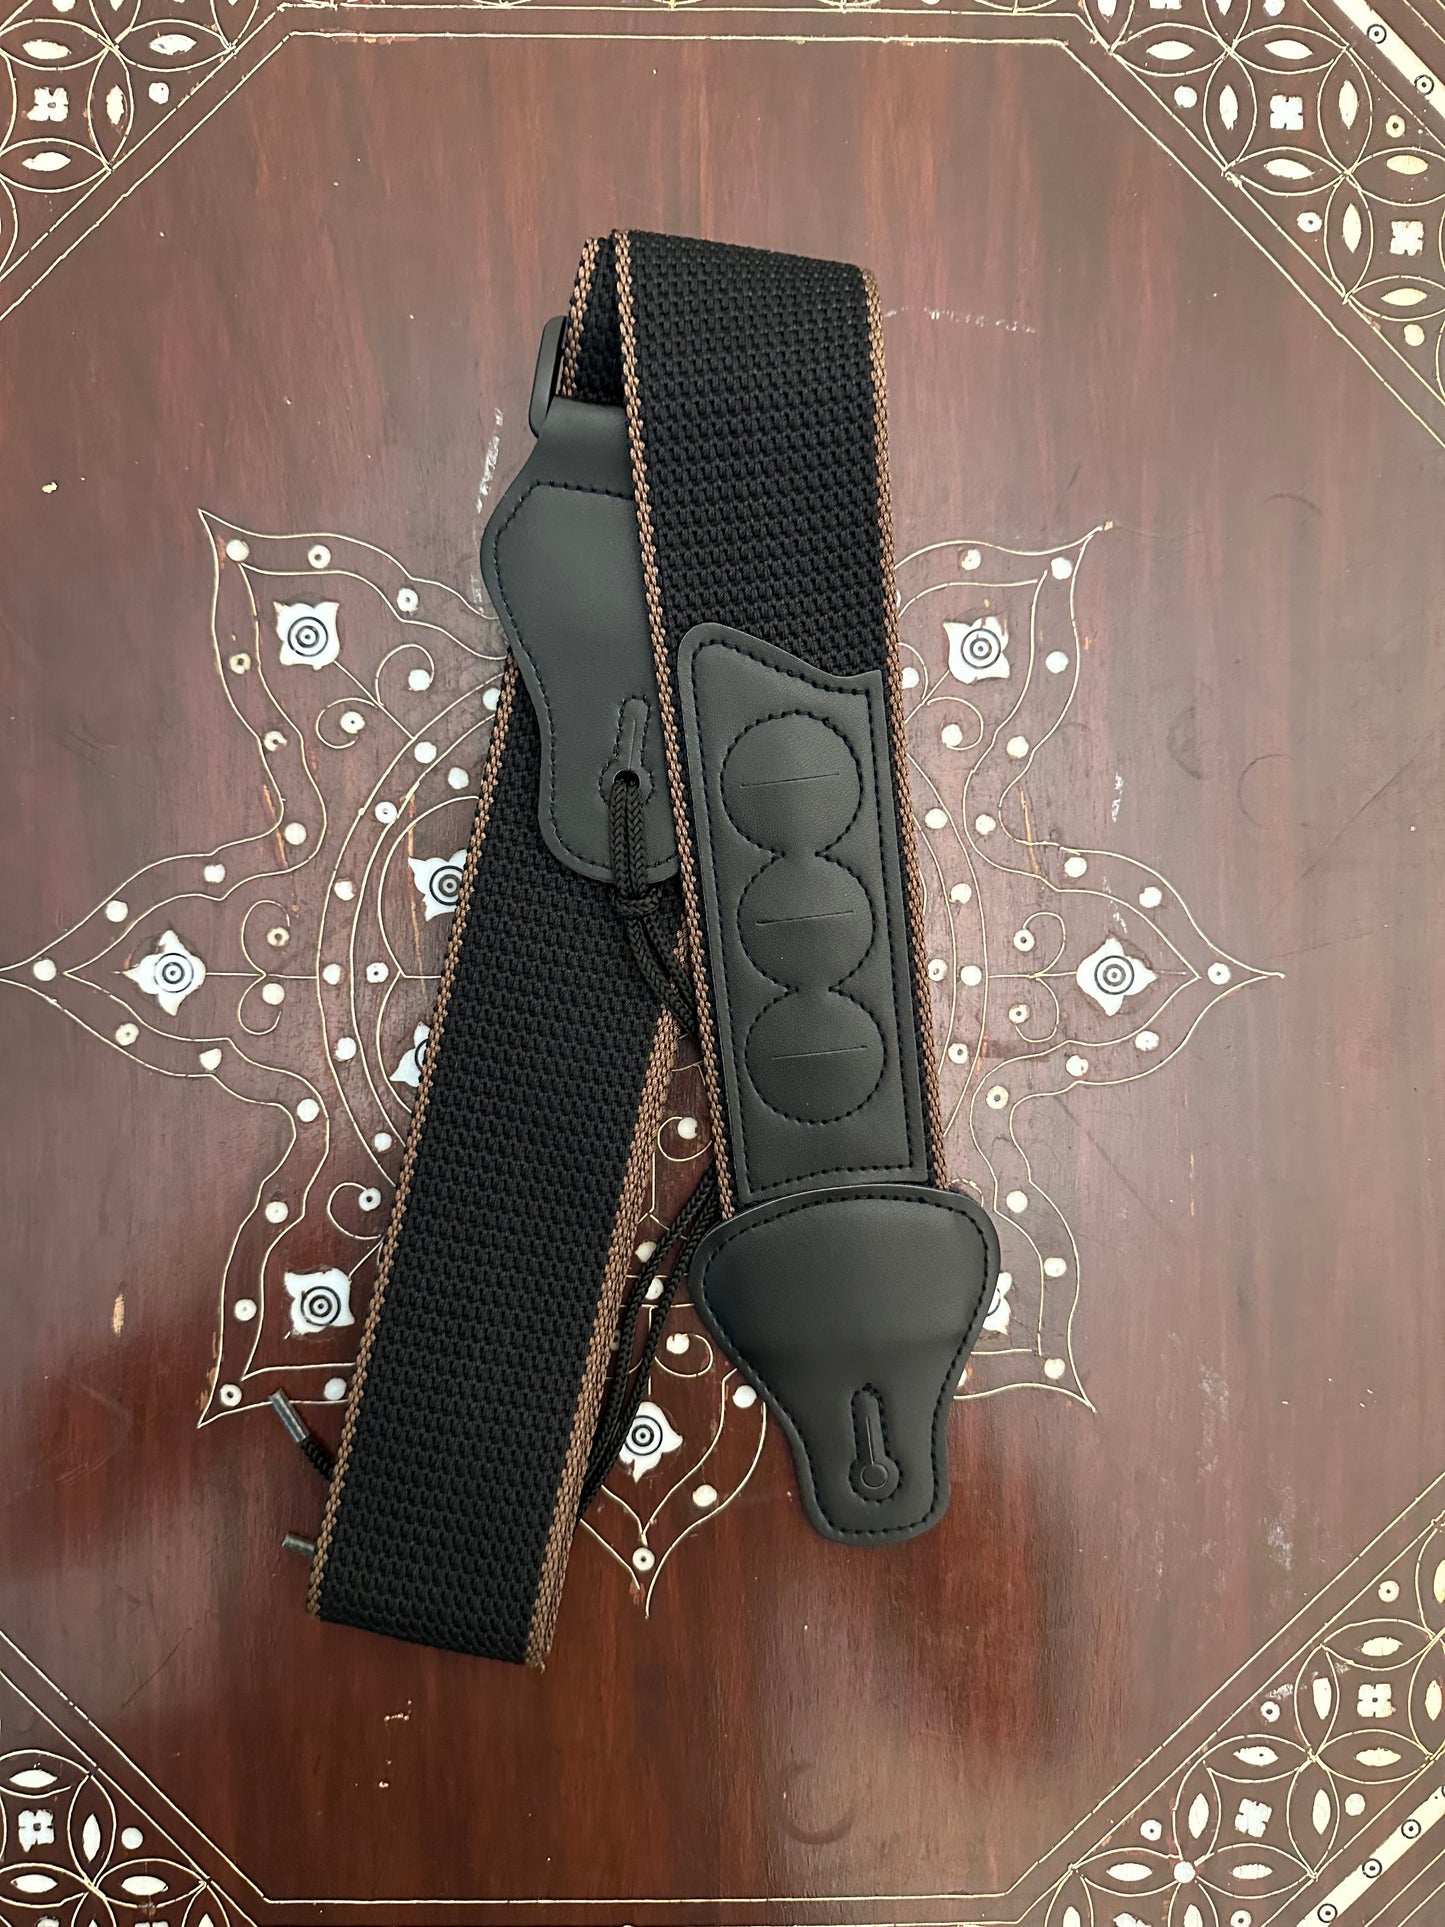 Guitar strap with pickholder